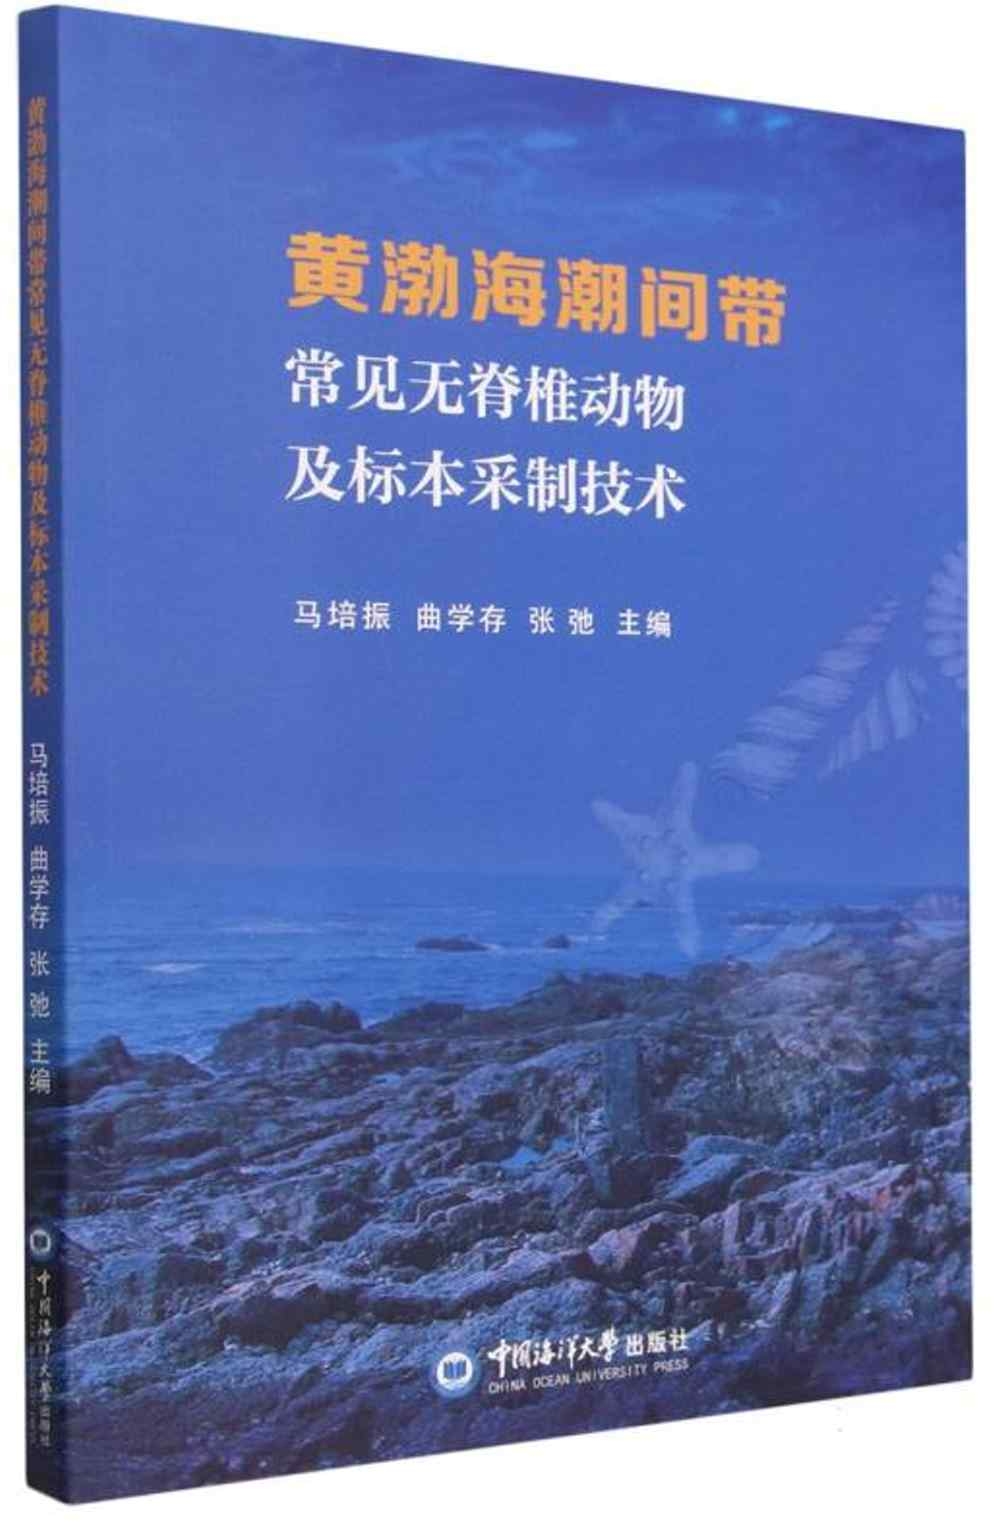 黃渤海潮間帶常見無脊椎動物及標本採制技術